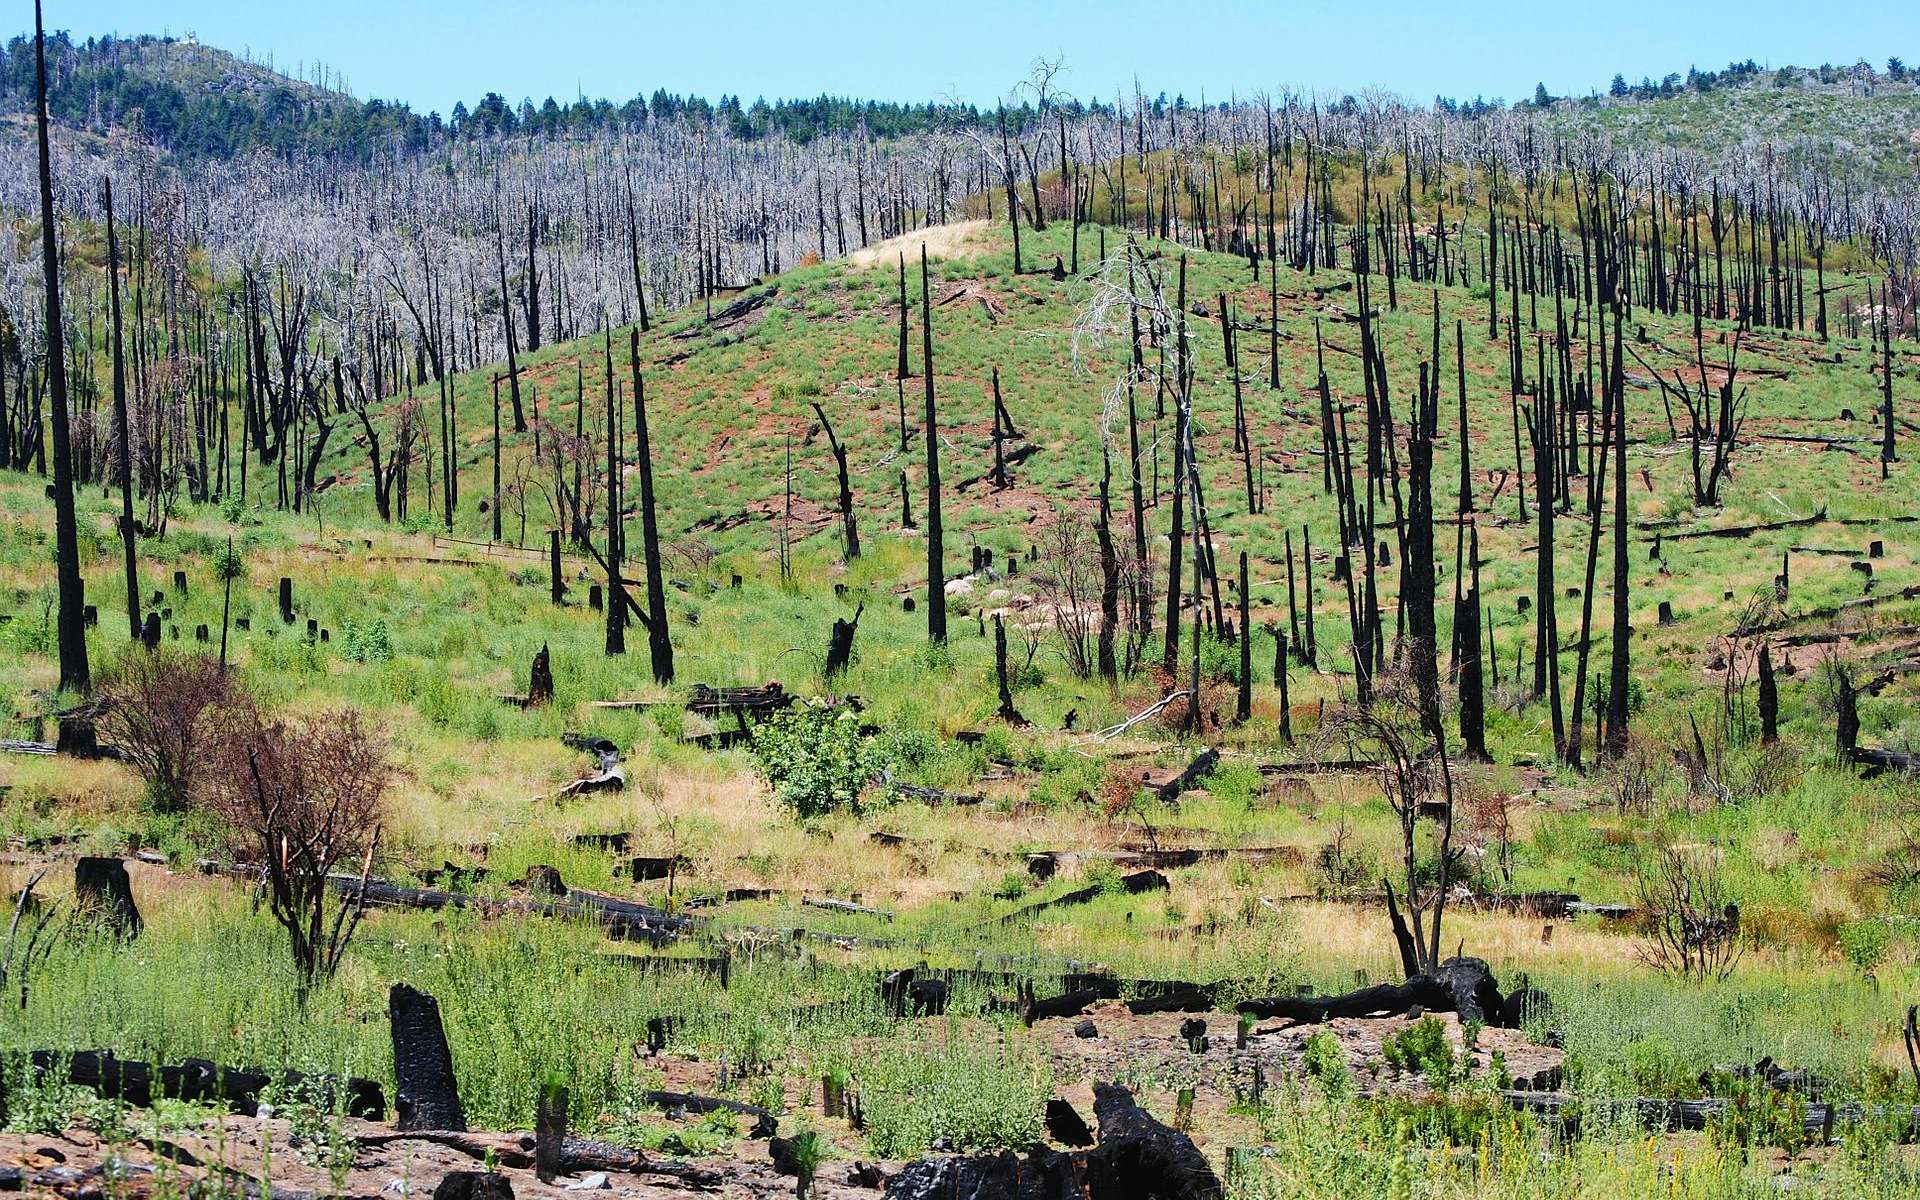 La disparition des arbres en Californie se poursuit d'année en année. En cause, des incendies, la hausse des températures, les coupes et aussi la prolifération de petits coléoptères, les bark beetles. © Theresamcgee, Pixabay